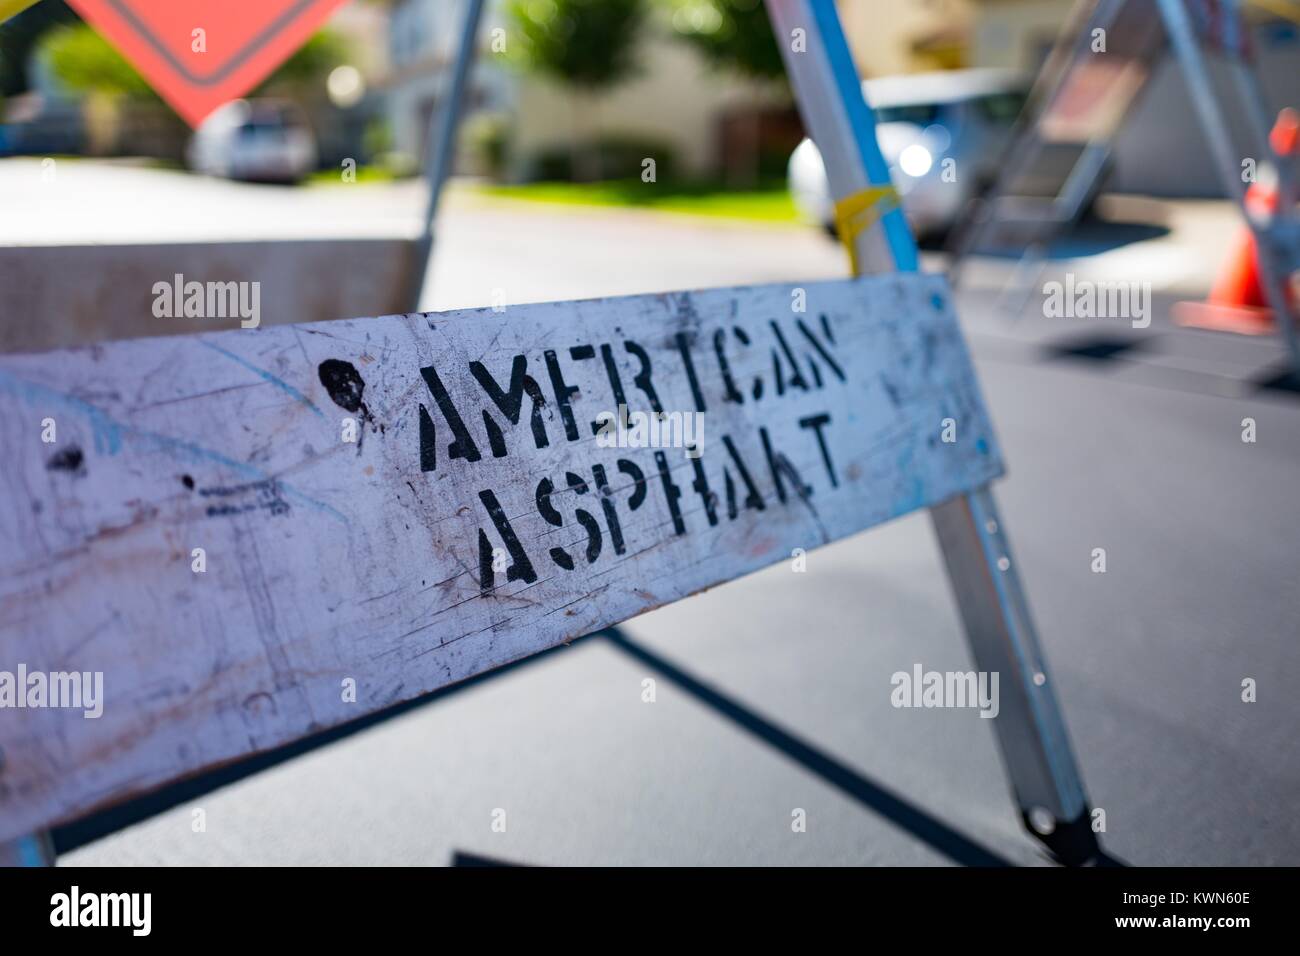 Detailansicht der Basis eines Metalls Straßenbau mit Sprühfarbe Schablone lesen Amerikanische Asphalt, San Ramon, Kalifornien, 11. Juli 2017. Stockfoto